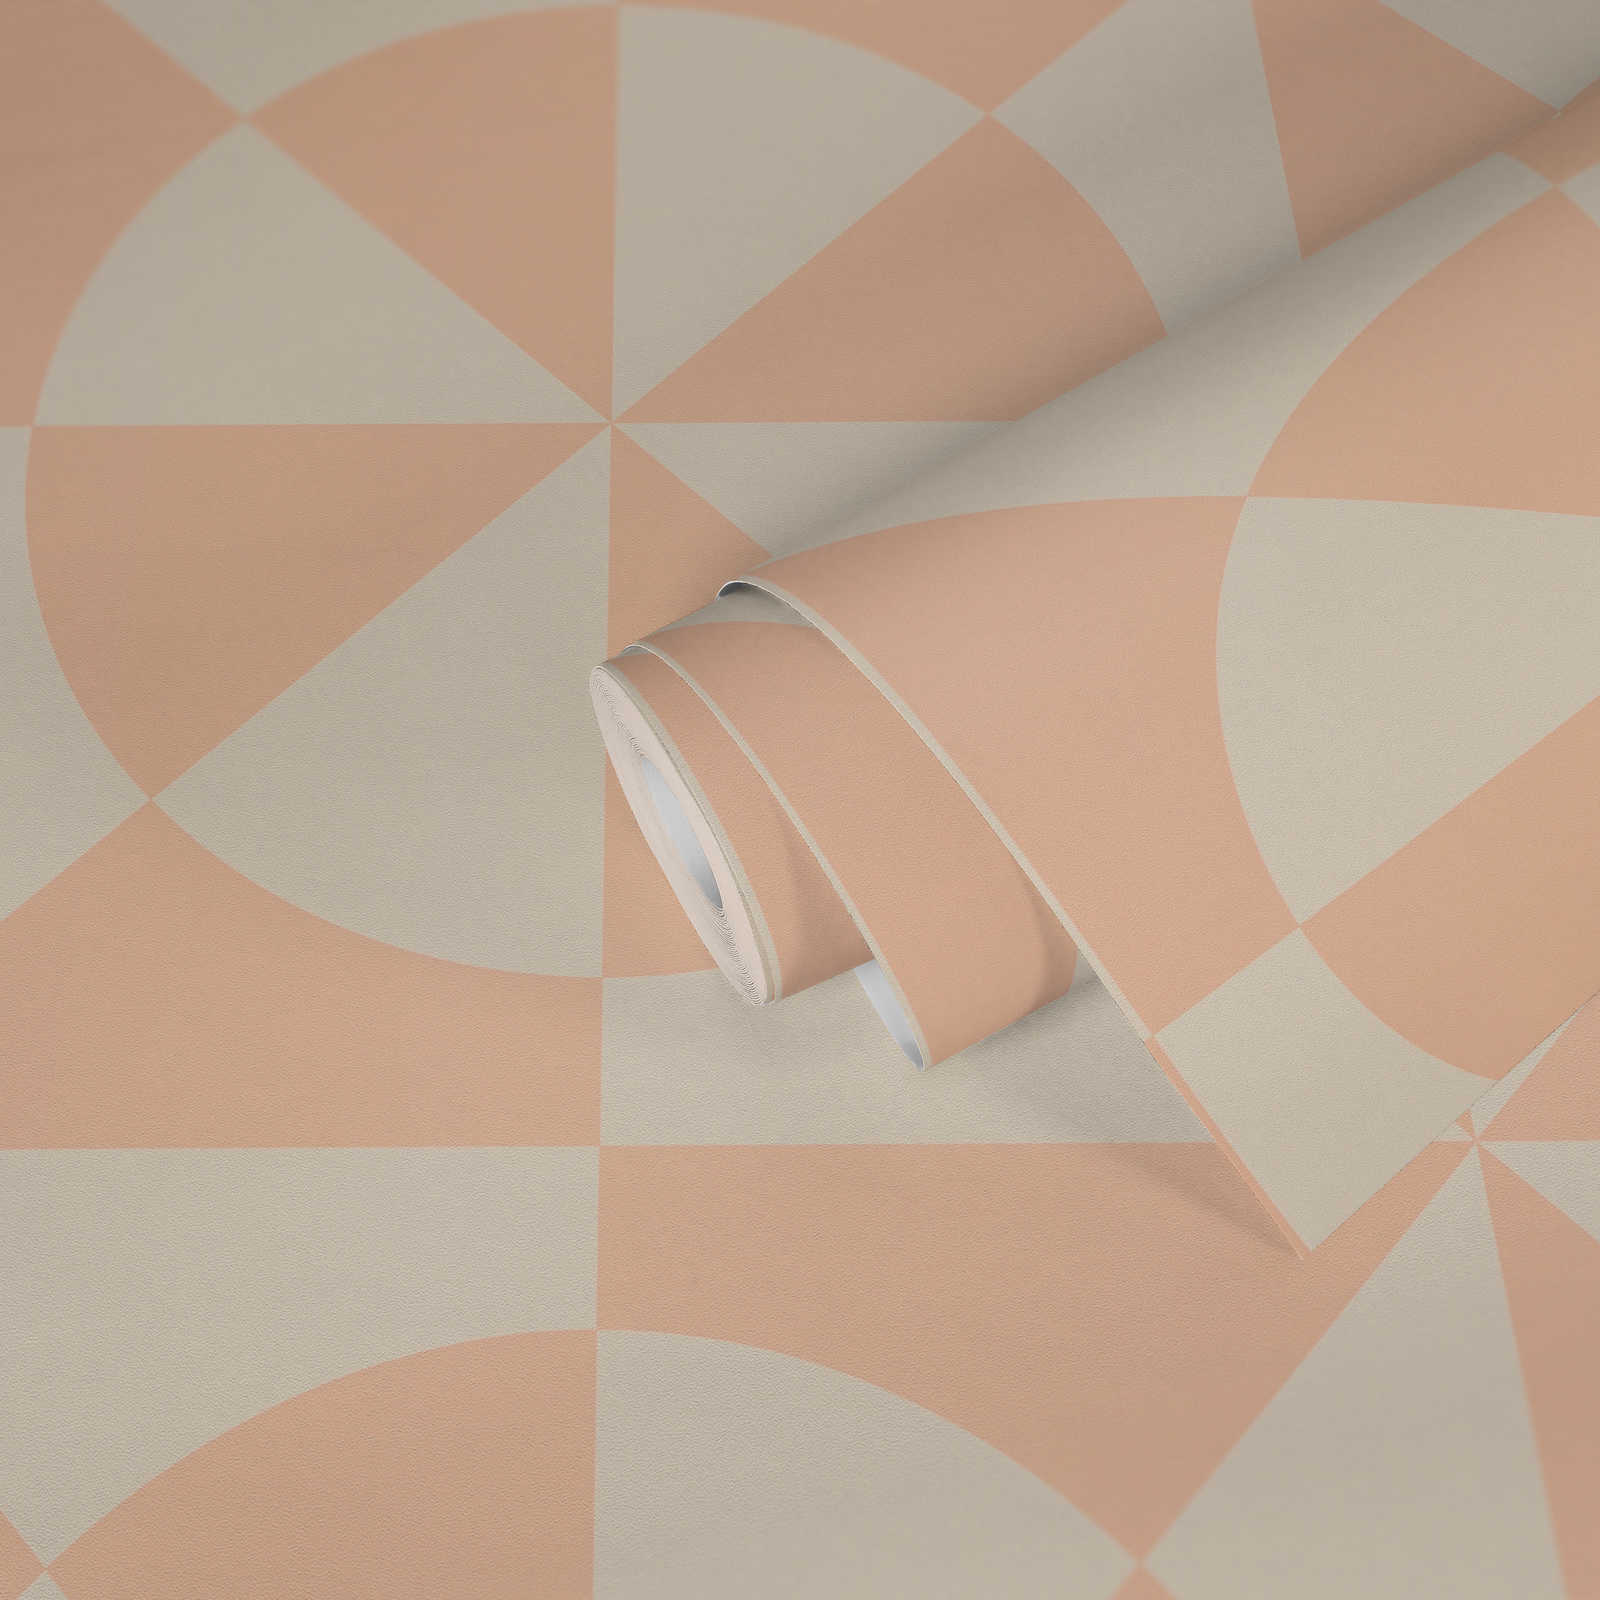             Papier peint graphique intissé avec triangles et cercles - crème, rose
        